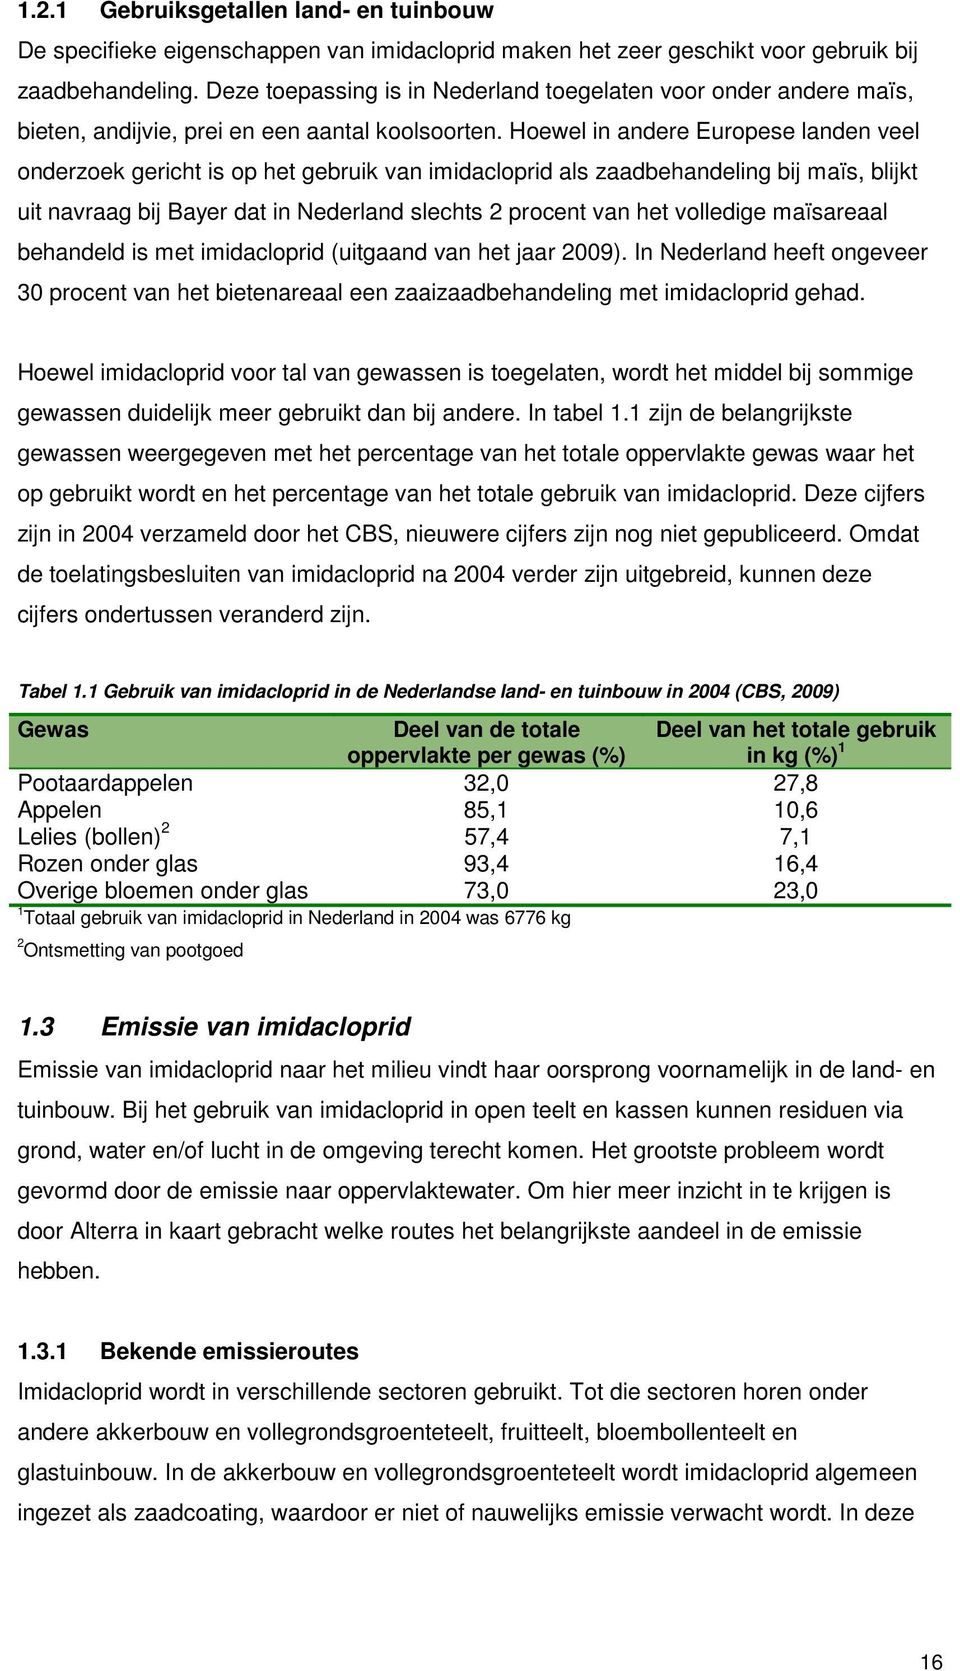 Hoewel in andere Europese landen veel onderzoek gericht is op het gebruik van imidacloprid als zaadbehandeling bij maïs, blijkt uit navraag bij Bayer dat in Nederland slechts 2 procent van het